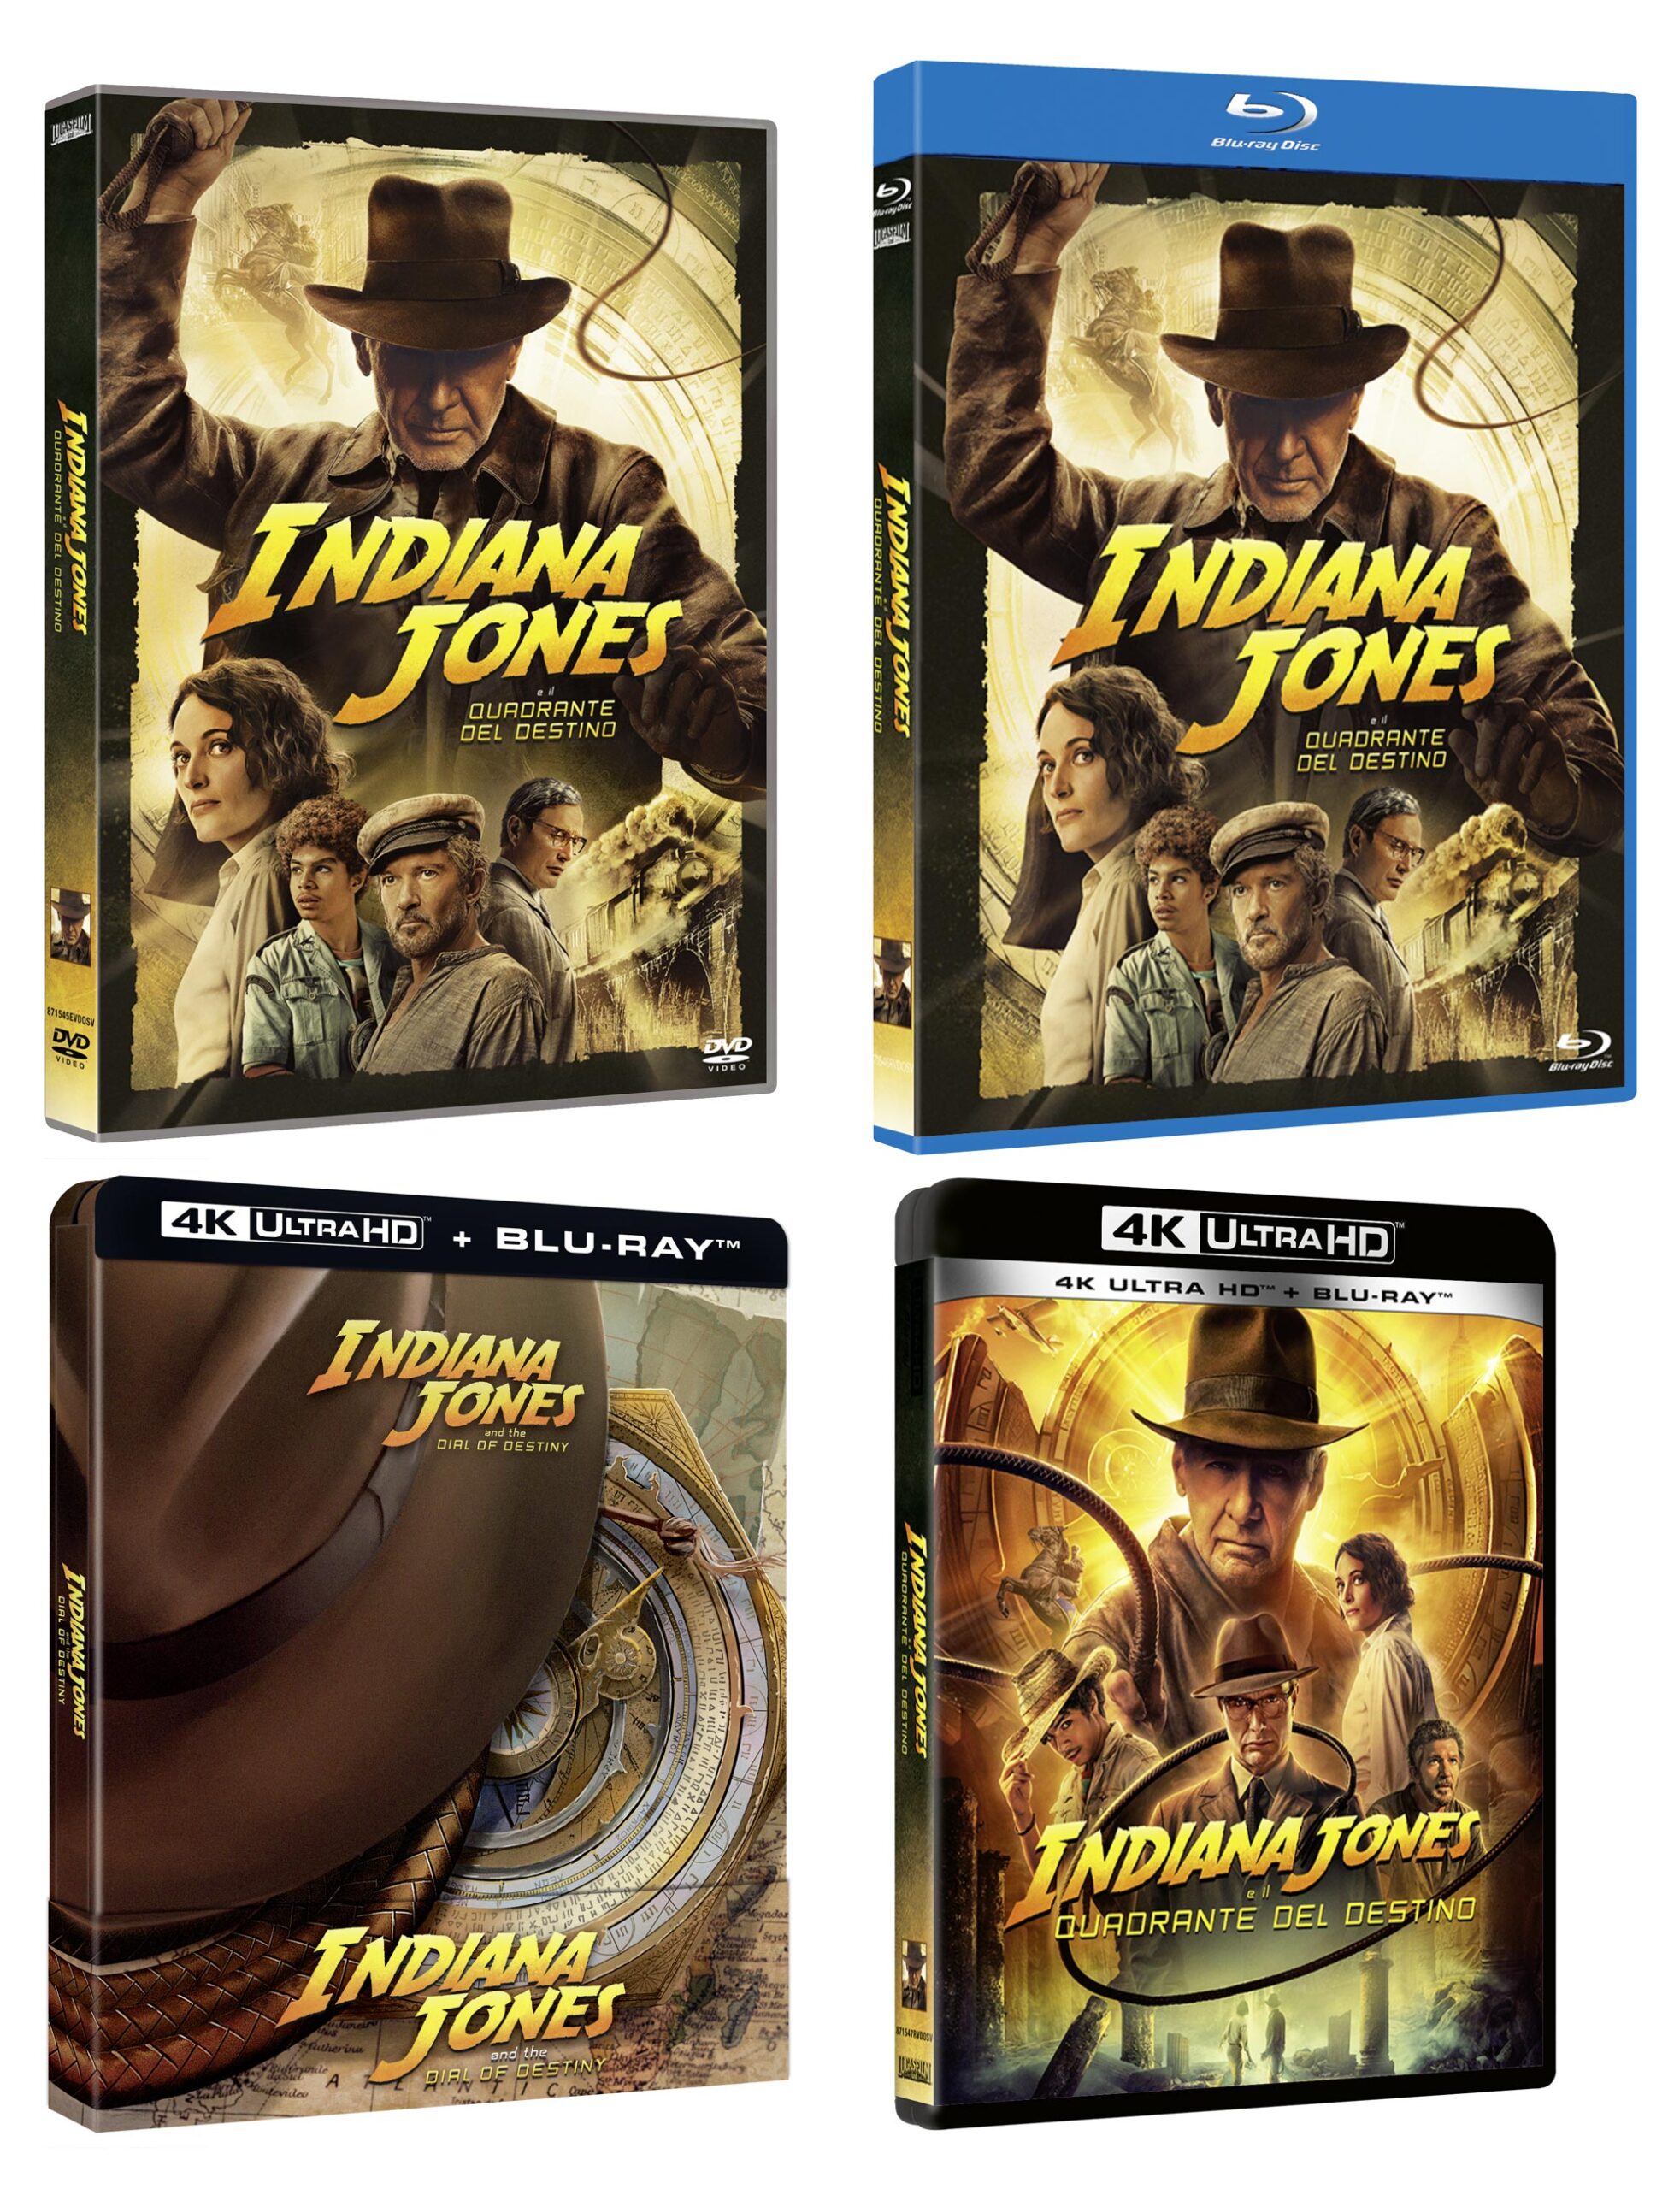 Indiana Jones e il Quadrante del Destino in DVD, Blu-ray, 4K e Steelbook 4K